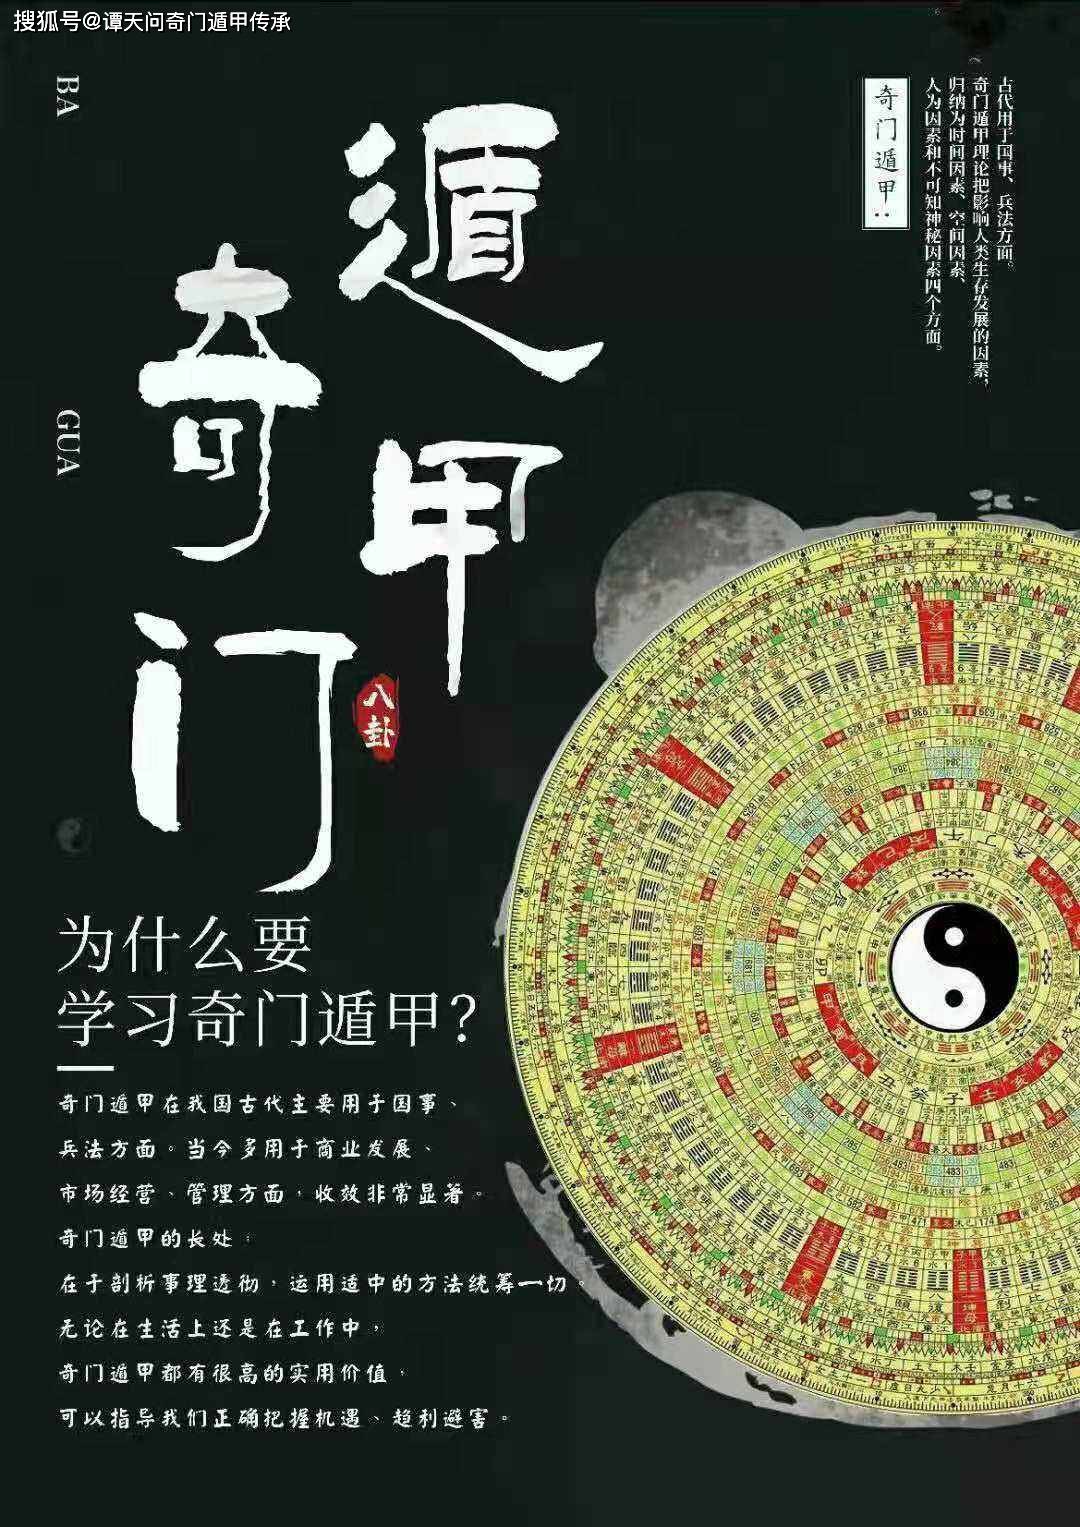 奇门典籍“奇门遁甲”可以说是中国最大的一门学问